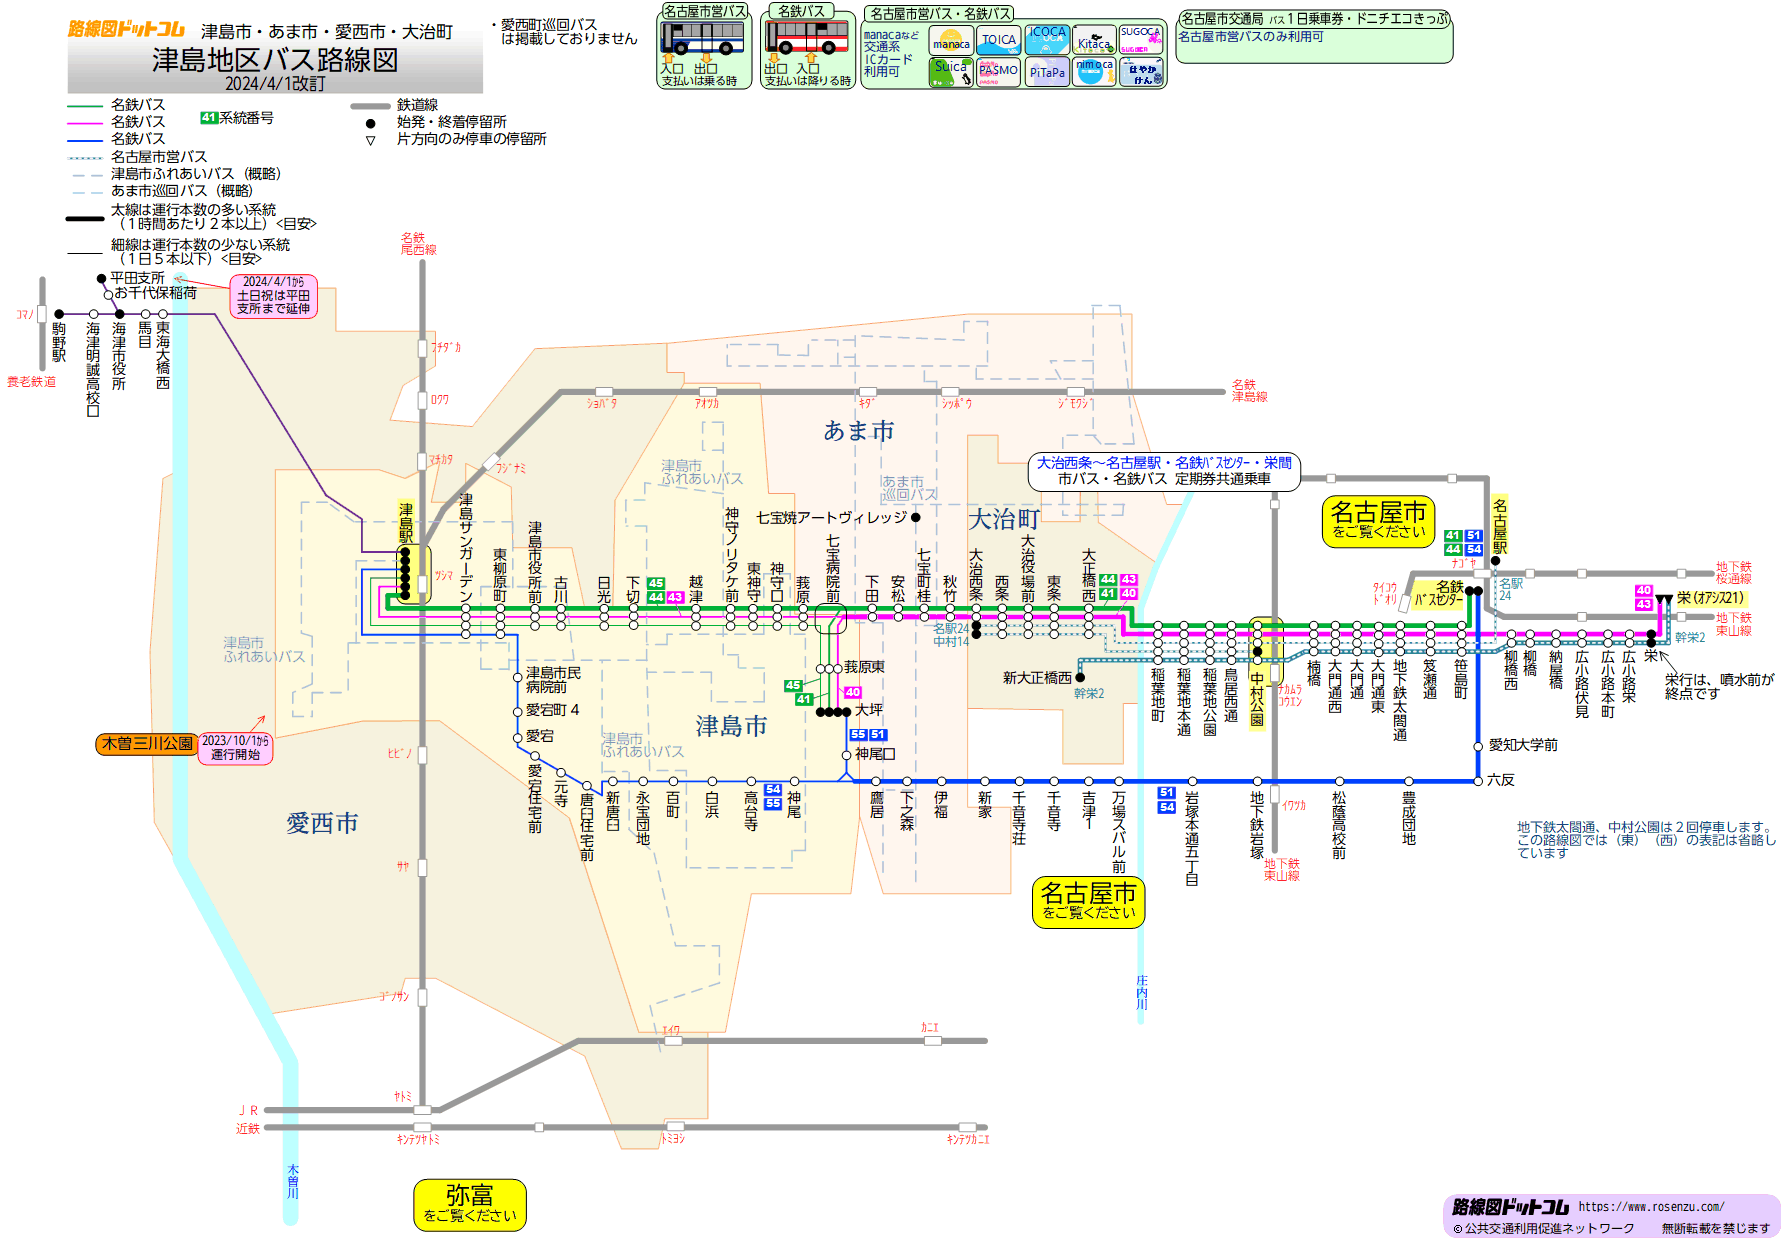 路線図ドットコム 愛知県 津島地区バス路線図